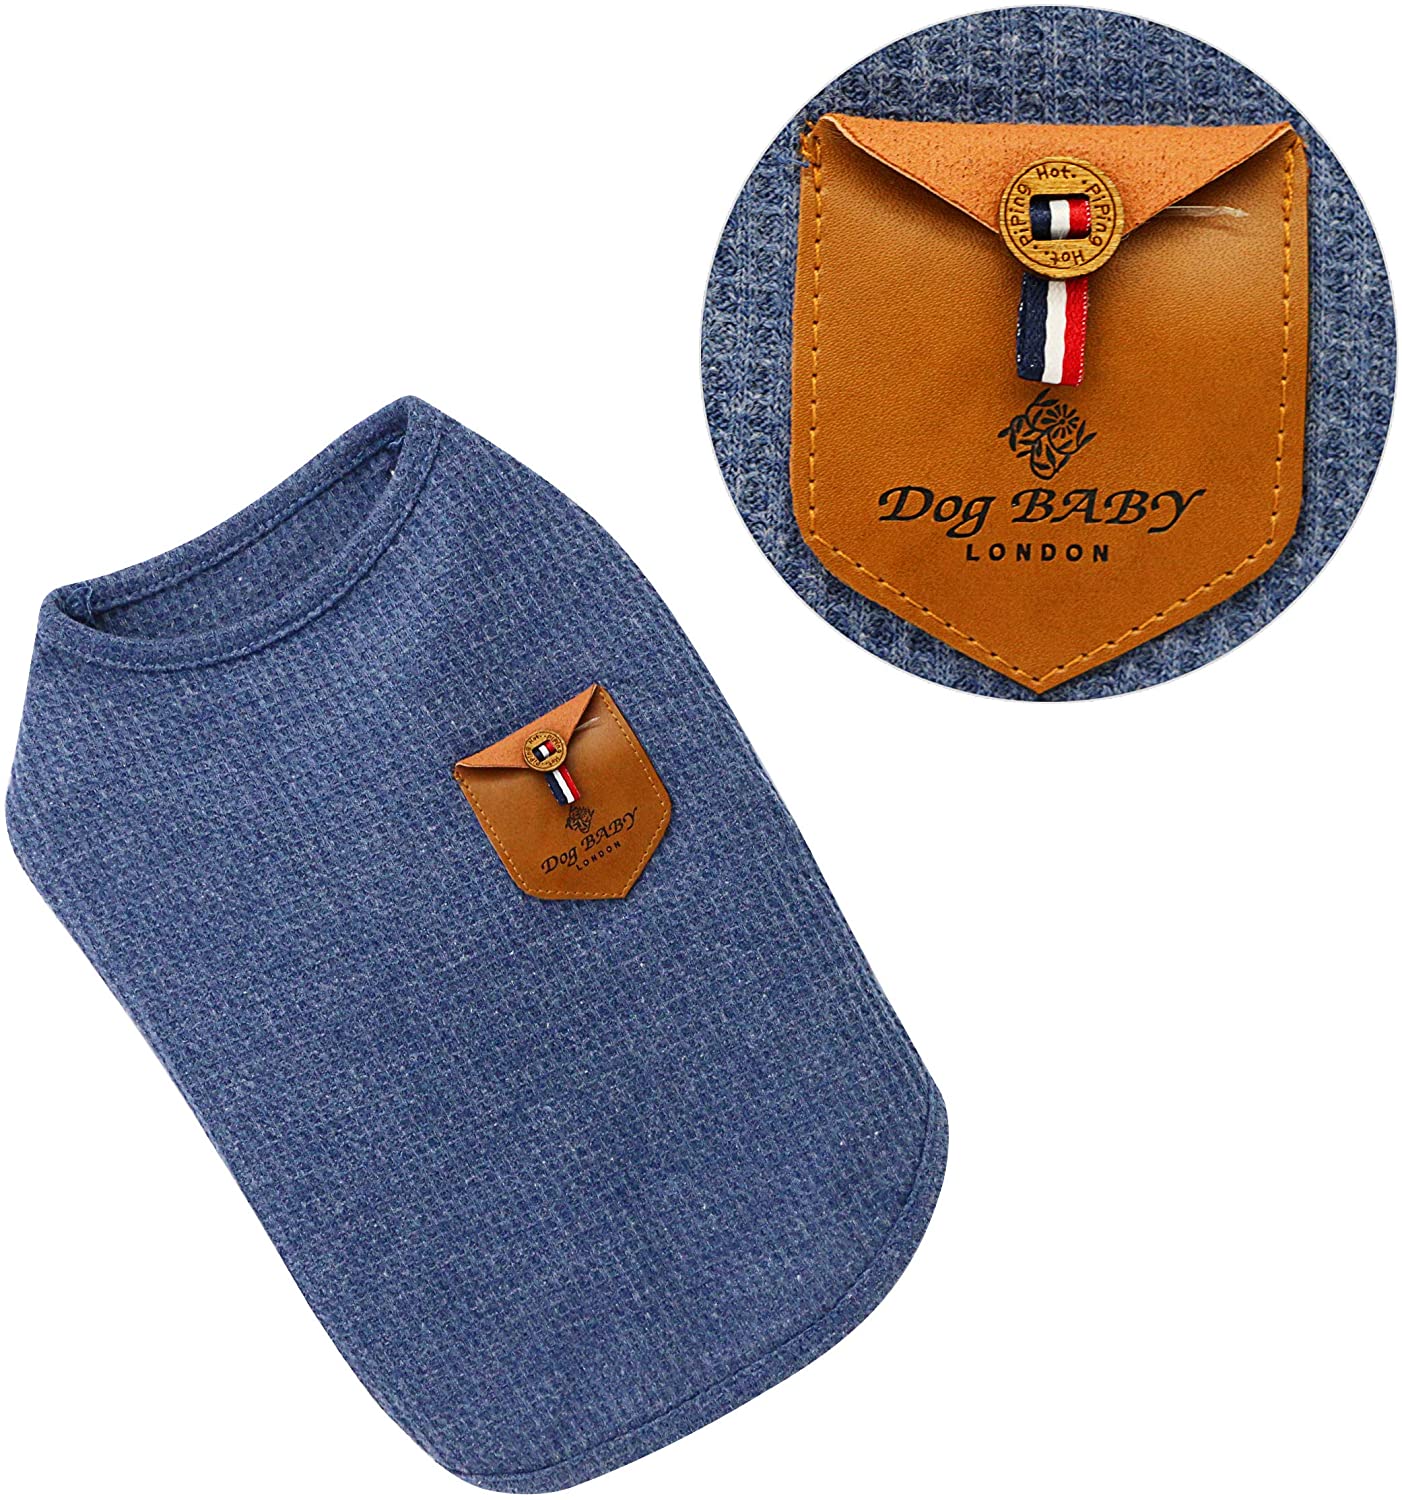  YAODHAOD Camiseta Minimalista para Perros, Ropa para Perros, Azul y Gris, 100% Algodón, para Mini Perros, Perros Pequeños y Gatos (2 Paquetes) (S-Puppy por uno o Dos Meses, Azul y Gris) 